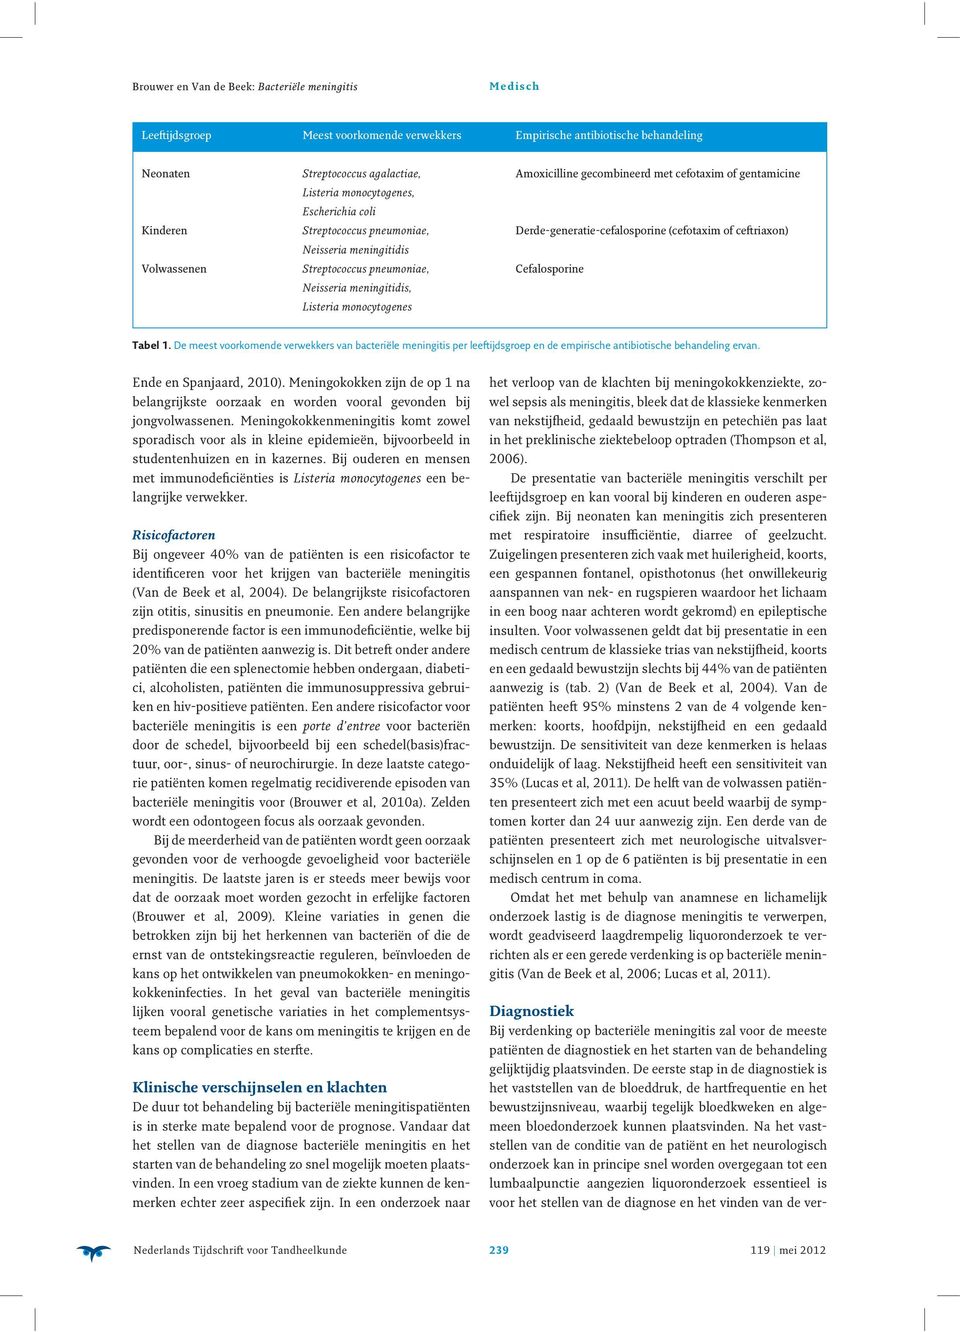 meningitidis, Listeria monocytogenes Tabel 1. De meest voorkomende verwekkers van bacteriële meningitis per leeftijdsgroep en de empirische antibiotische behandeling ervan. Ende en Spanjaard, 2010).